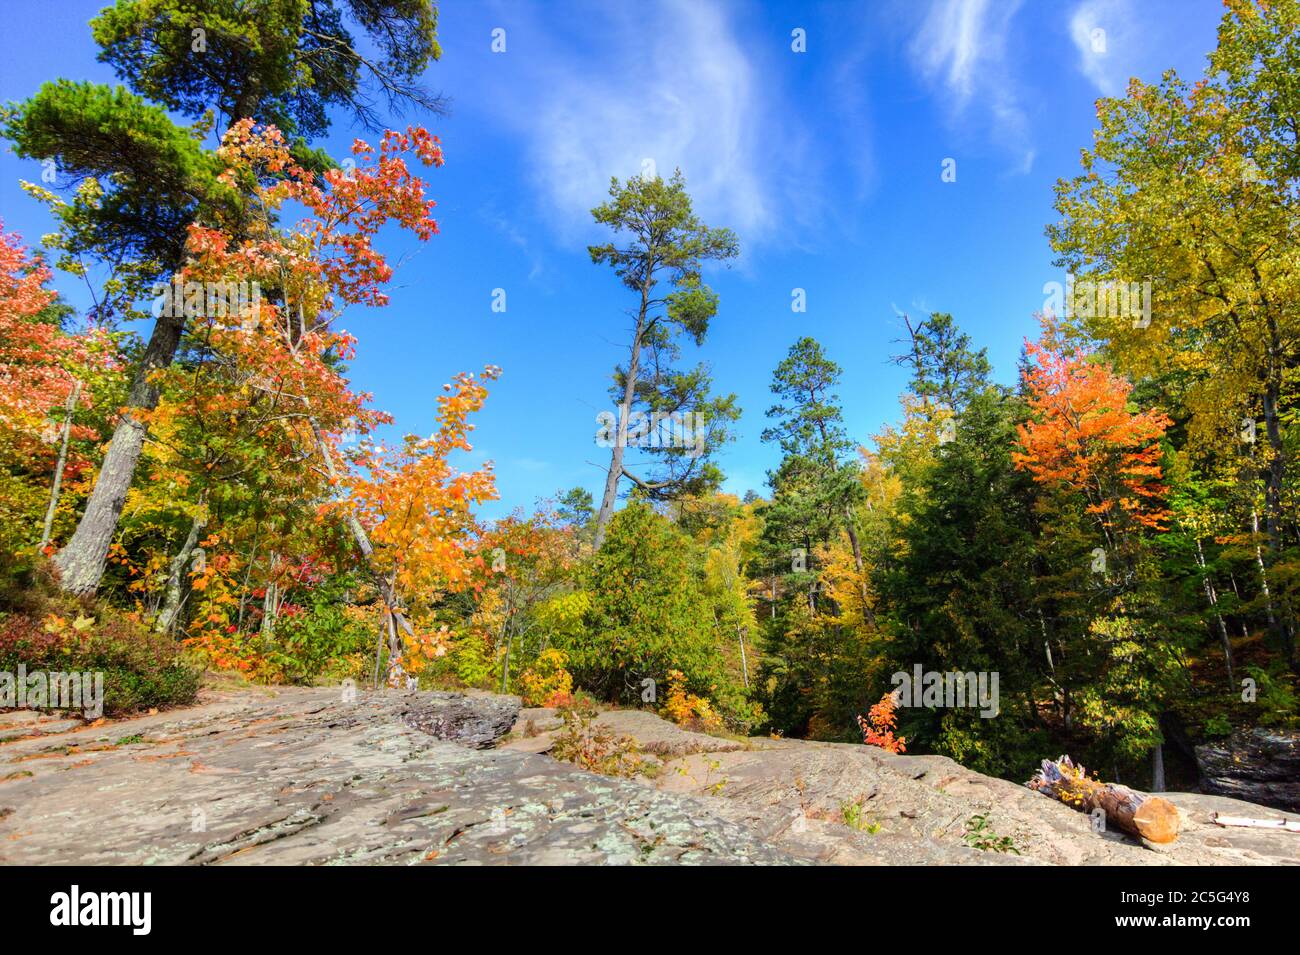 Paisaje forestal otoñal en el Parque Estatal Porcupine Mountains Wilderness en la Península Alta de Michigan durante los colores de otoño. Foto de stock